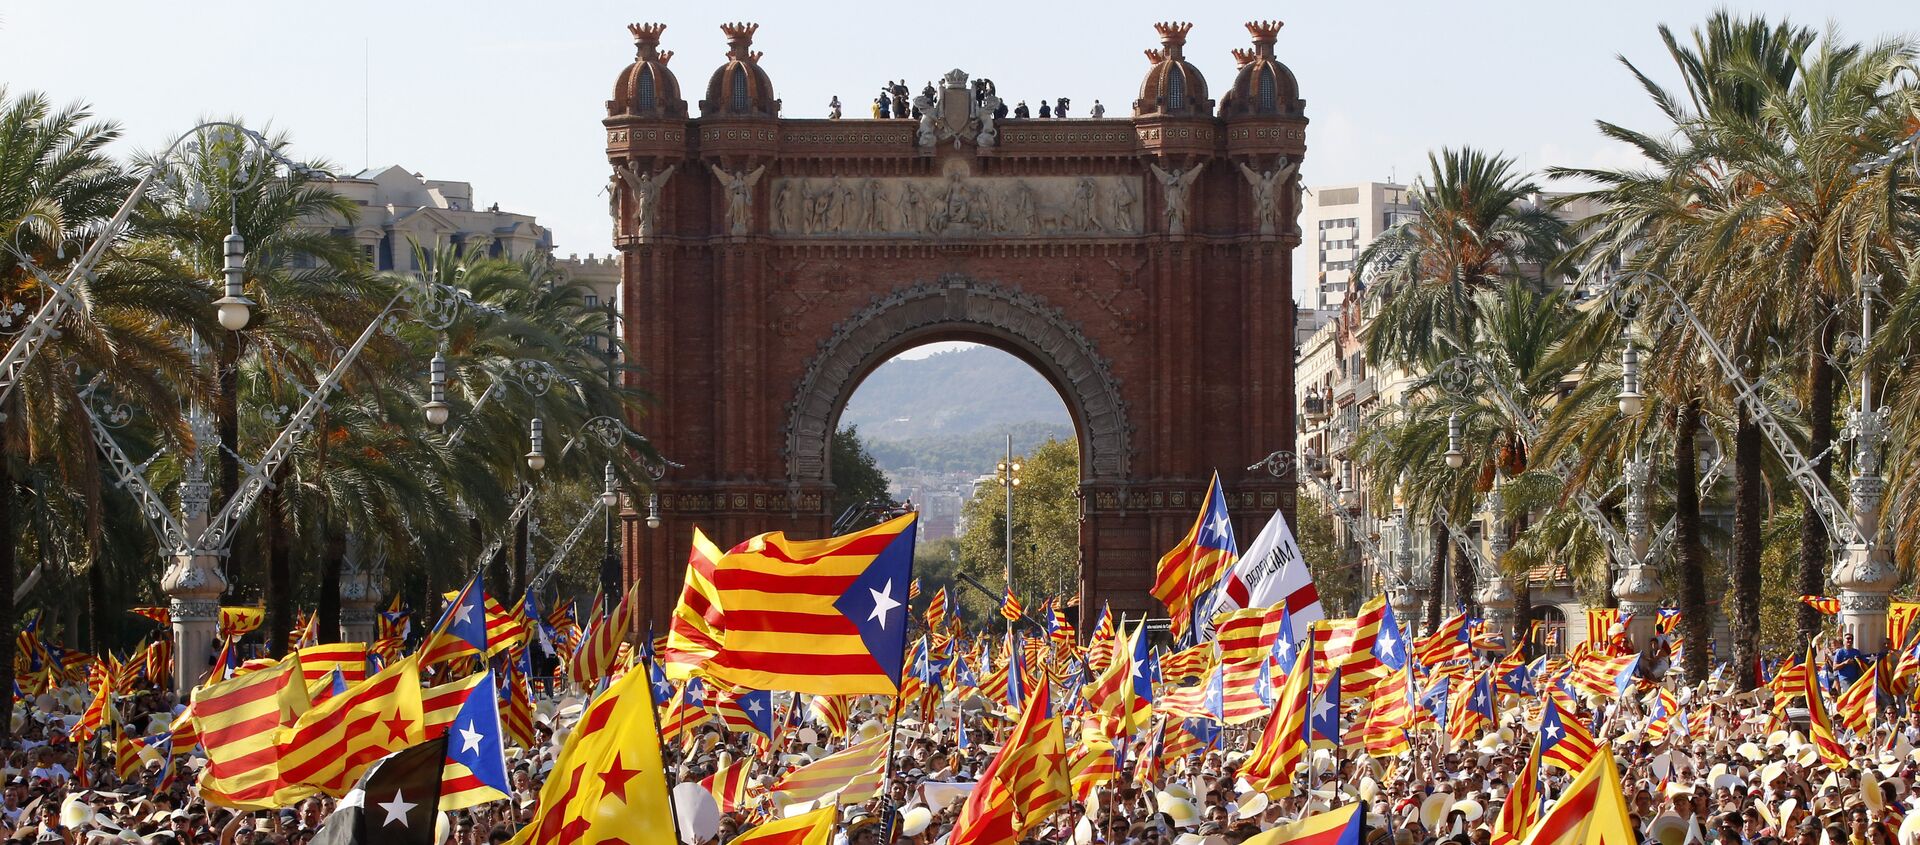 La gente celebrando el Día de Cataluña con las banderas independistas (archivo) - Sputnik Mundo, 1920, 23.07.2020